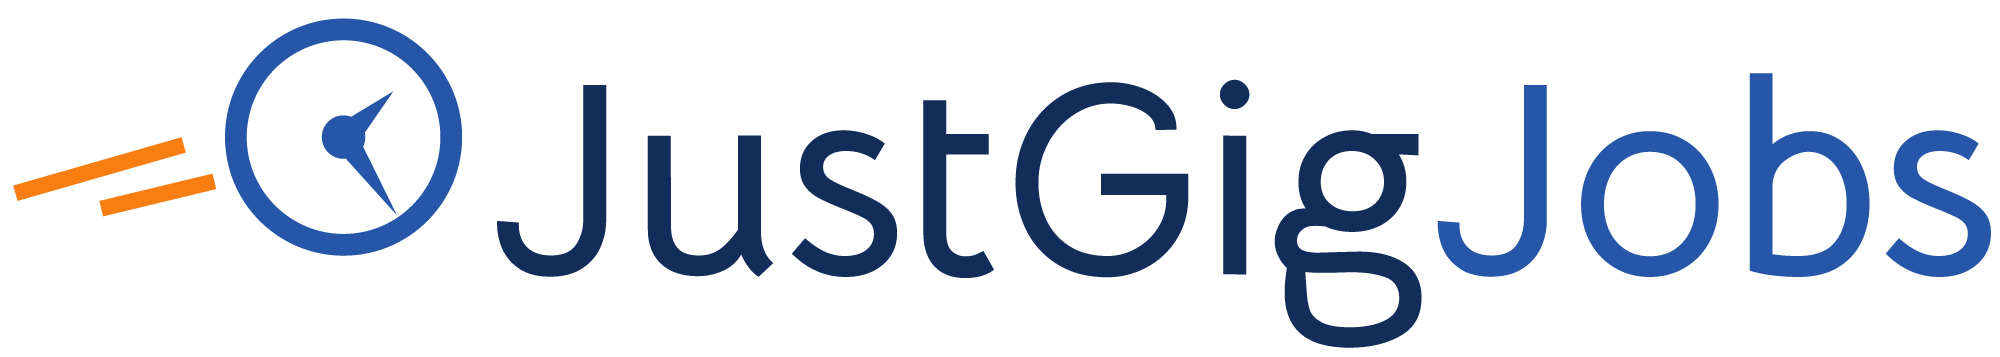 JustGigJobs logo